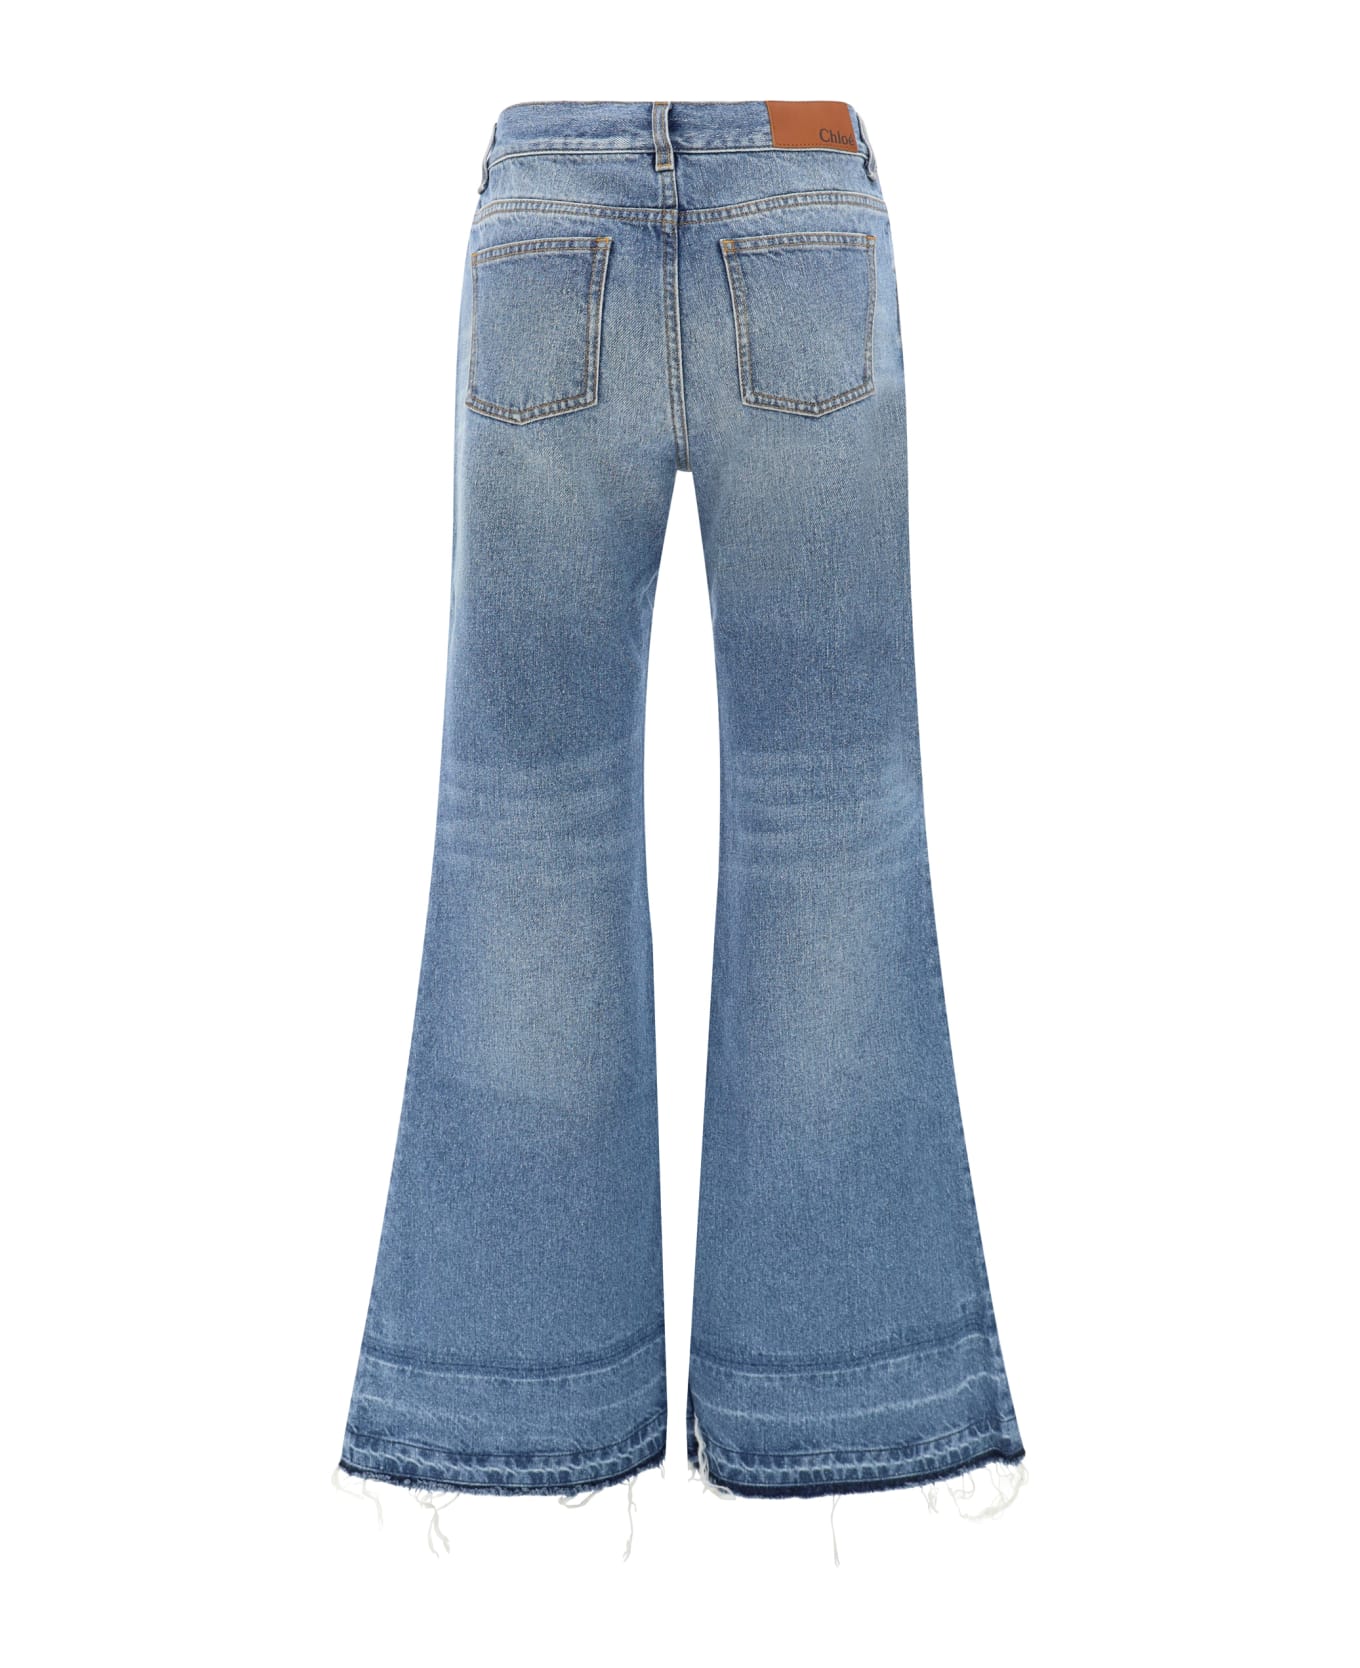 Chloé Frayed Edge Flared Jeans - Foggy Blue